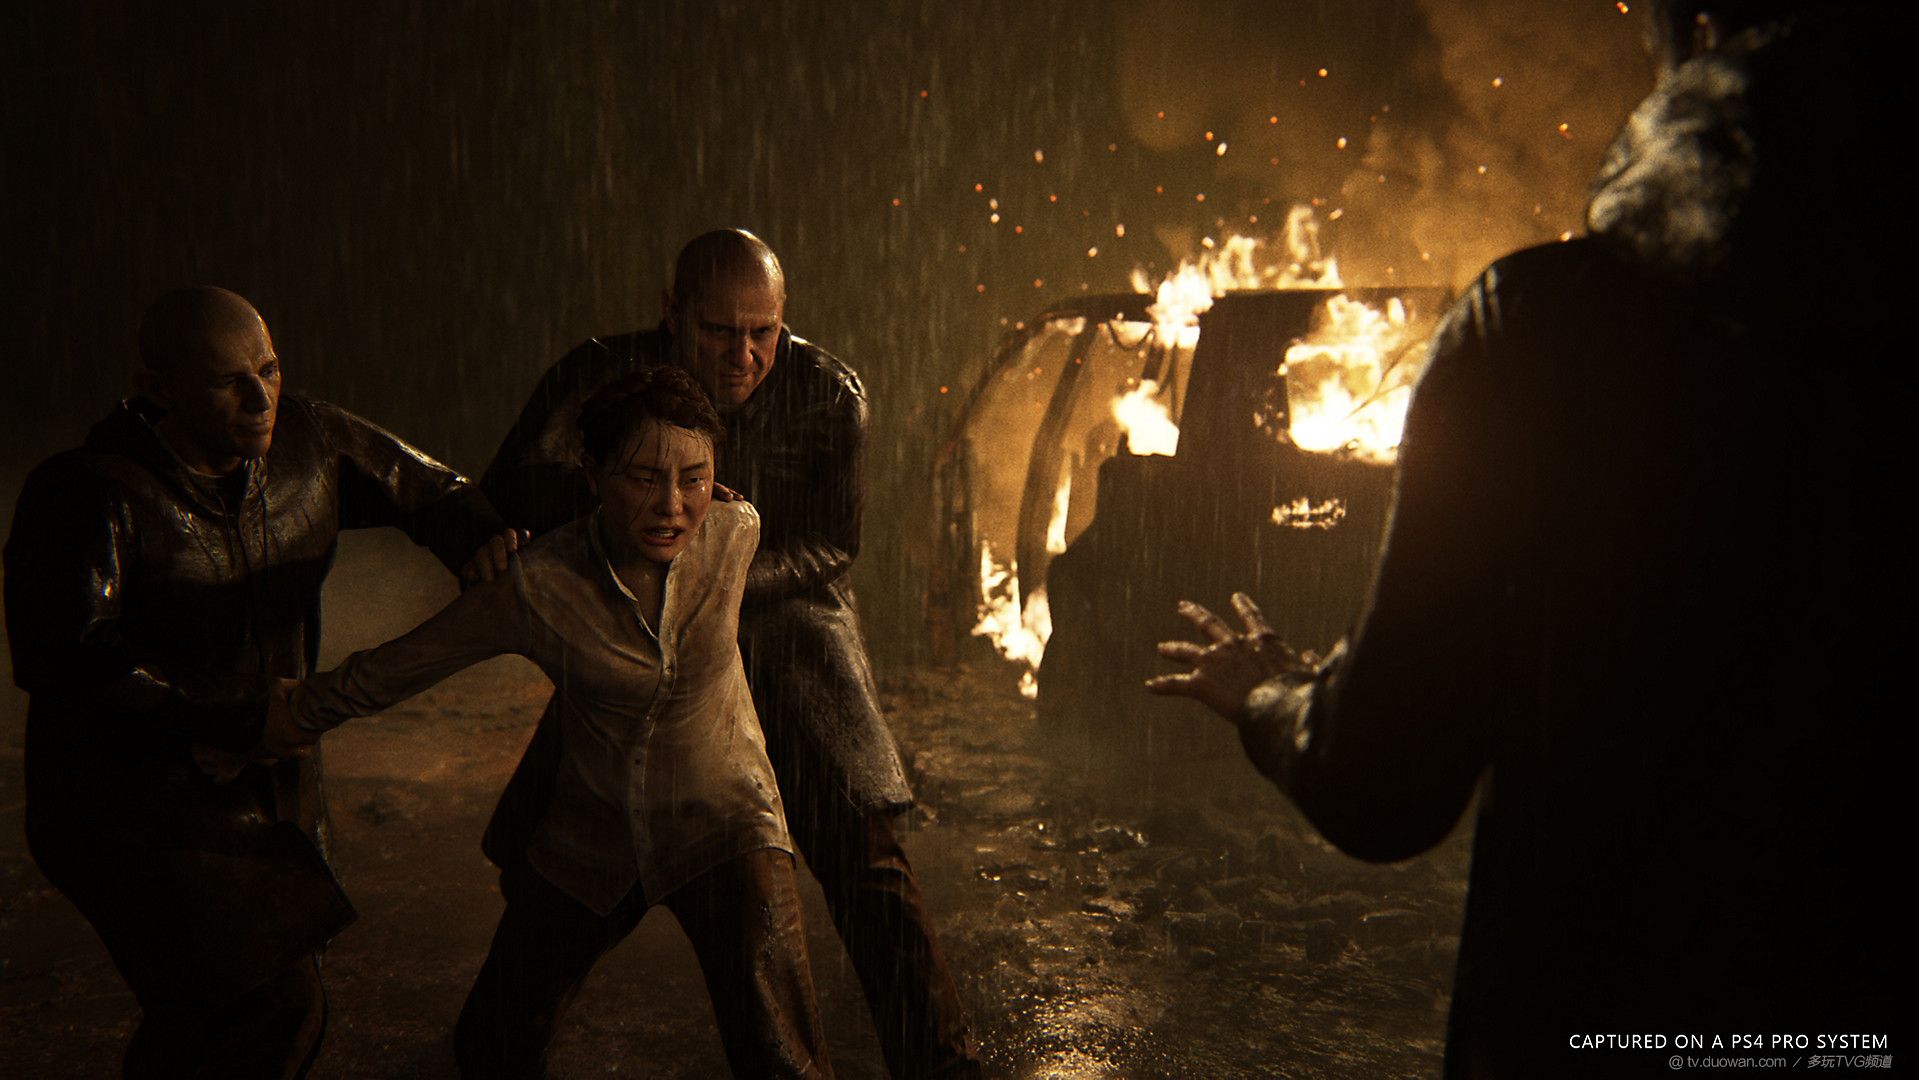 《最后生还者2》宣布将于2020年2月21日登陆PS4